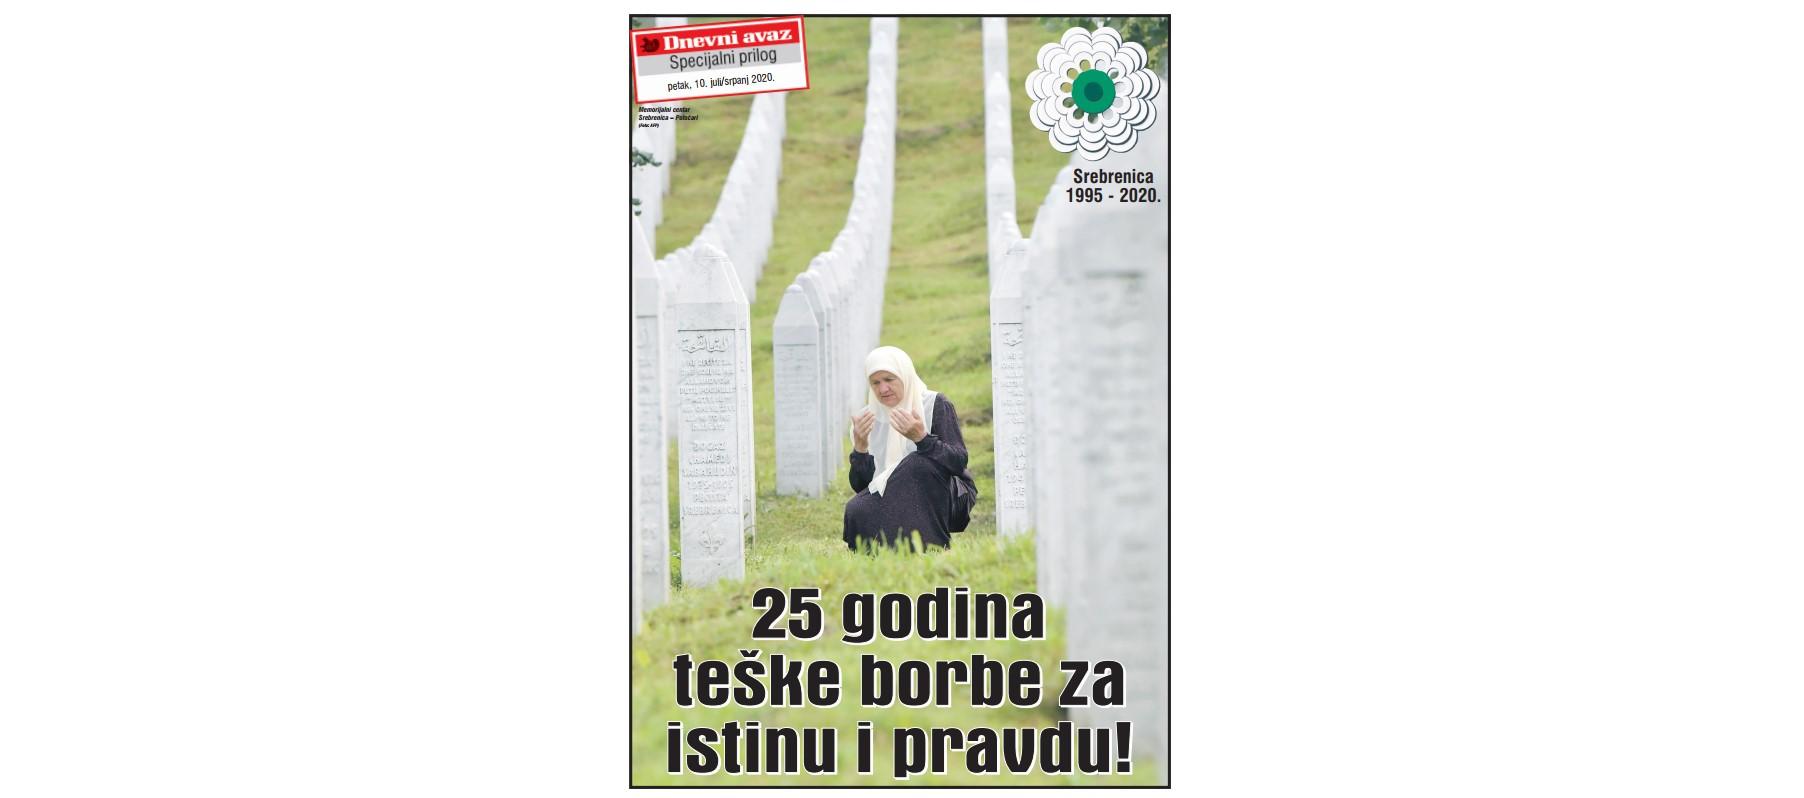 Danas u „Avazu“ specijalni prilog posvećen genocidu u Srebrenici: 25 godina teške borbe za istinu i pravdu!